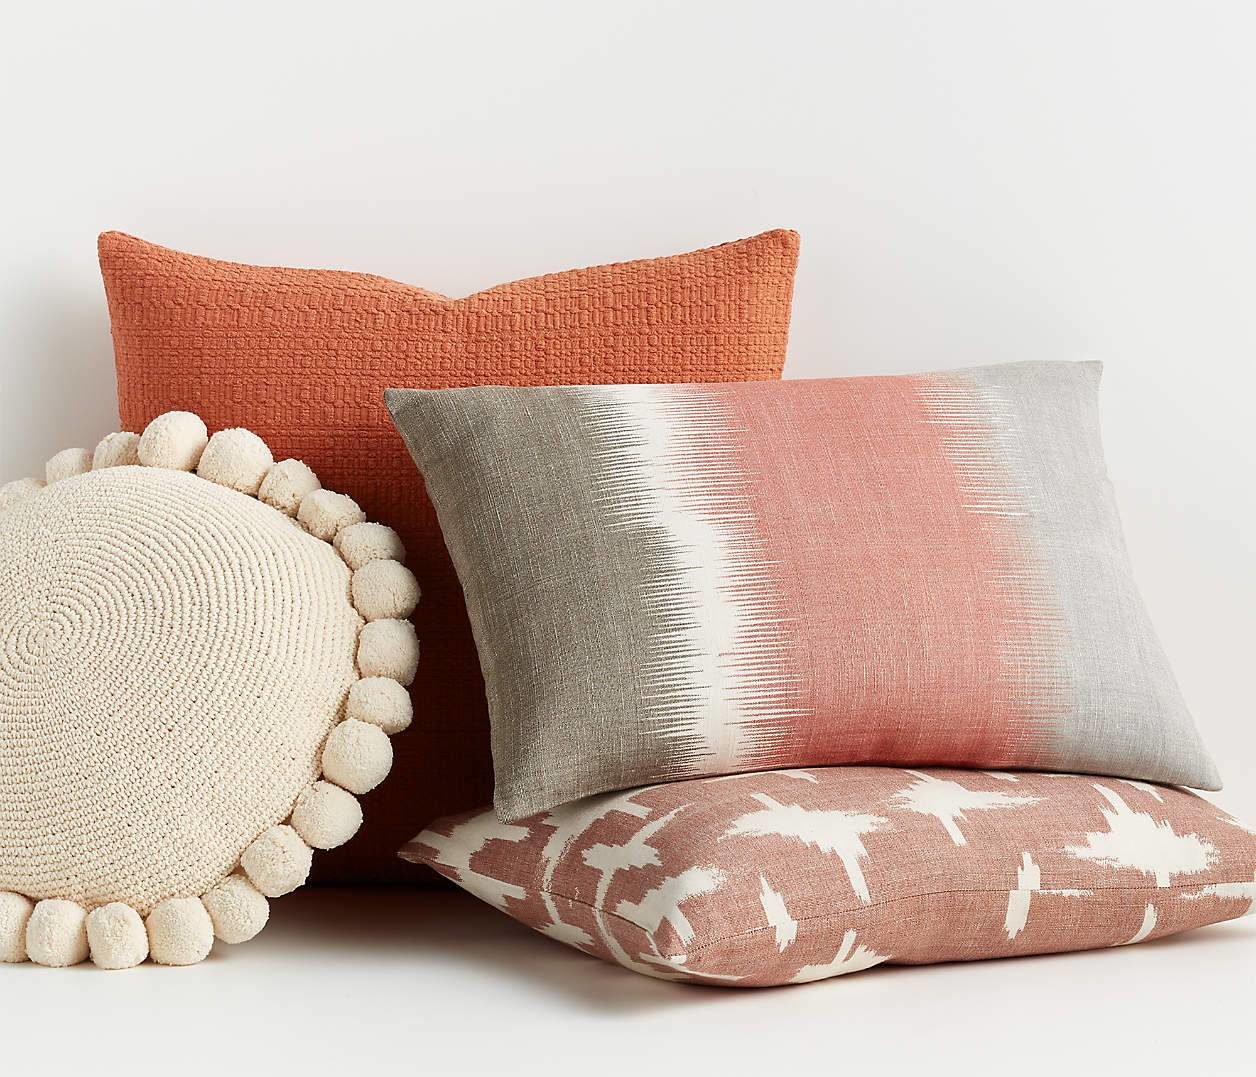 Neesa Decorative Throw Pillow Arrangement Textured Round Pillows